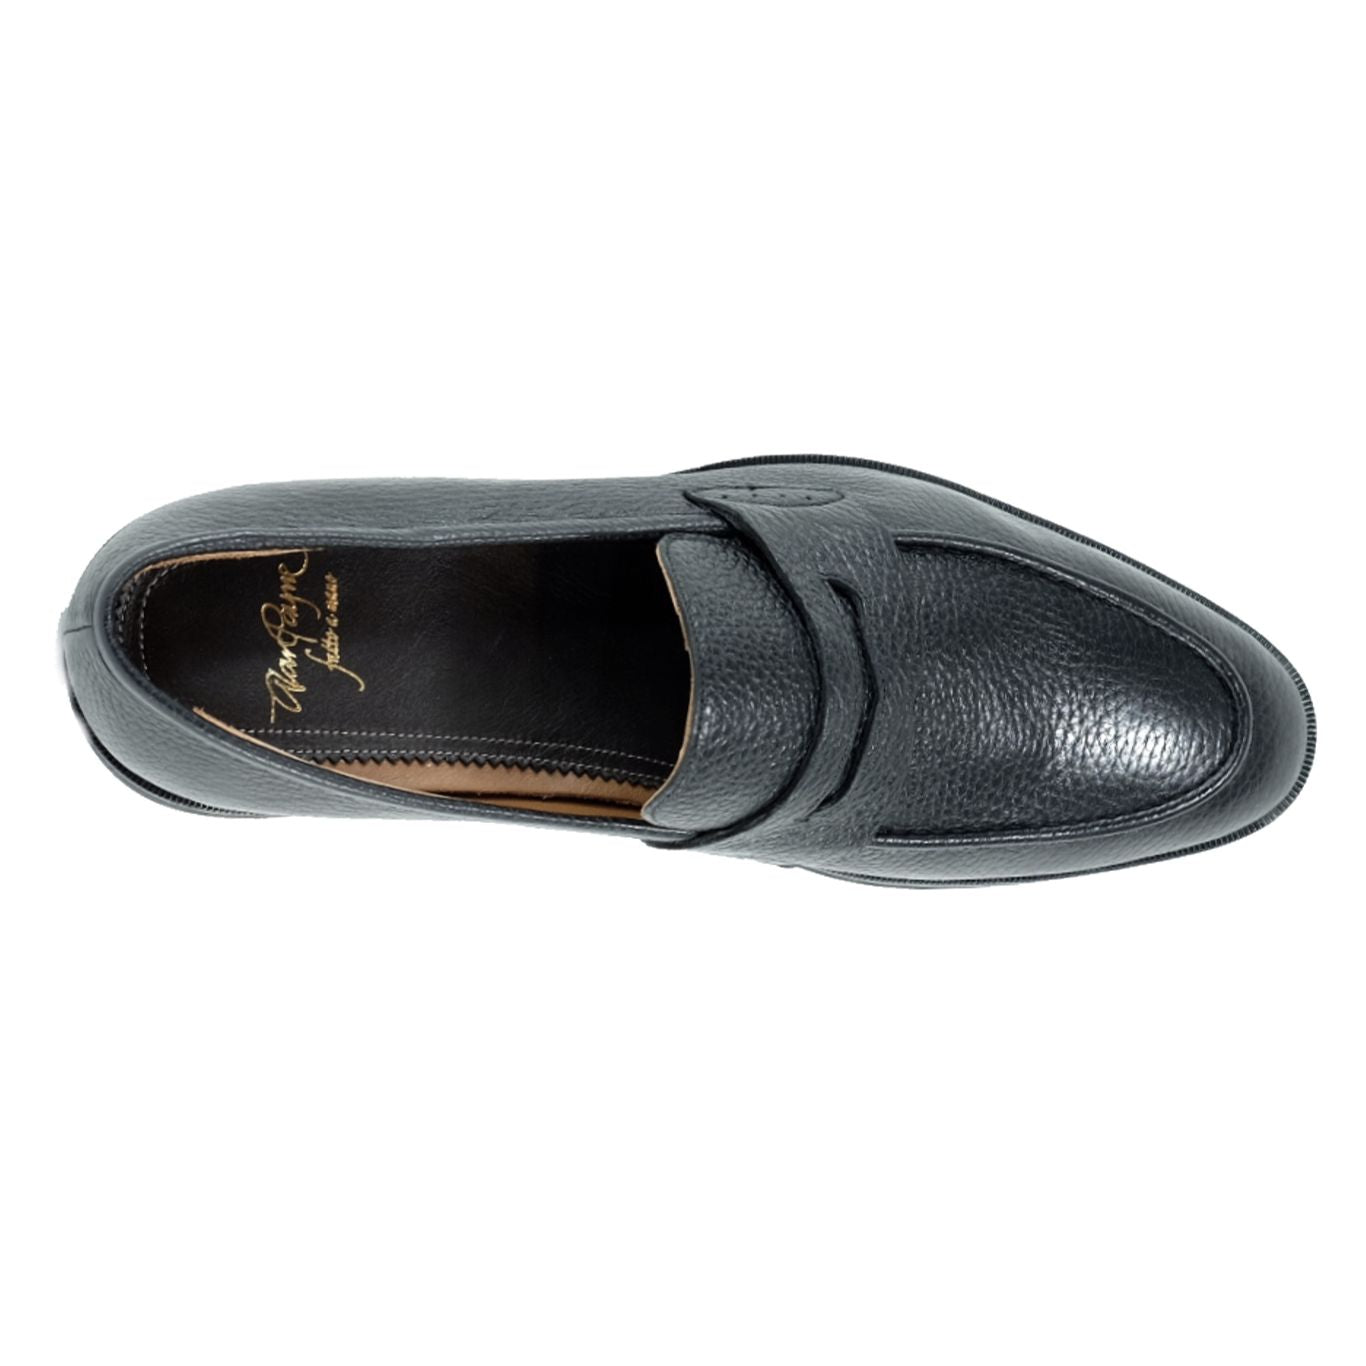 Zurich Deerskin Penny Loafer in Black by Alan Payne Footwear